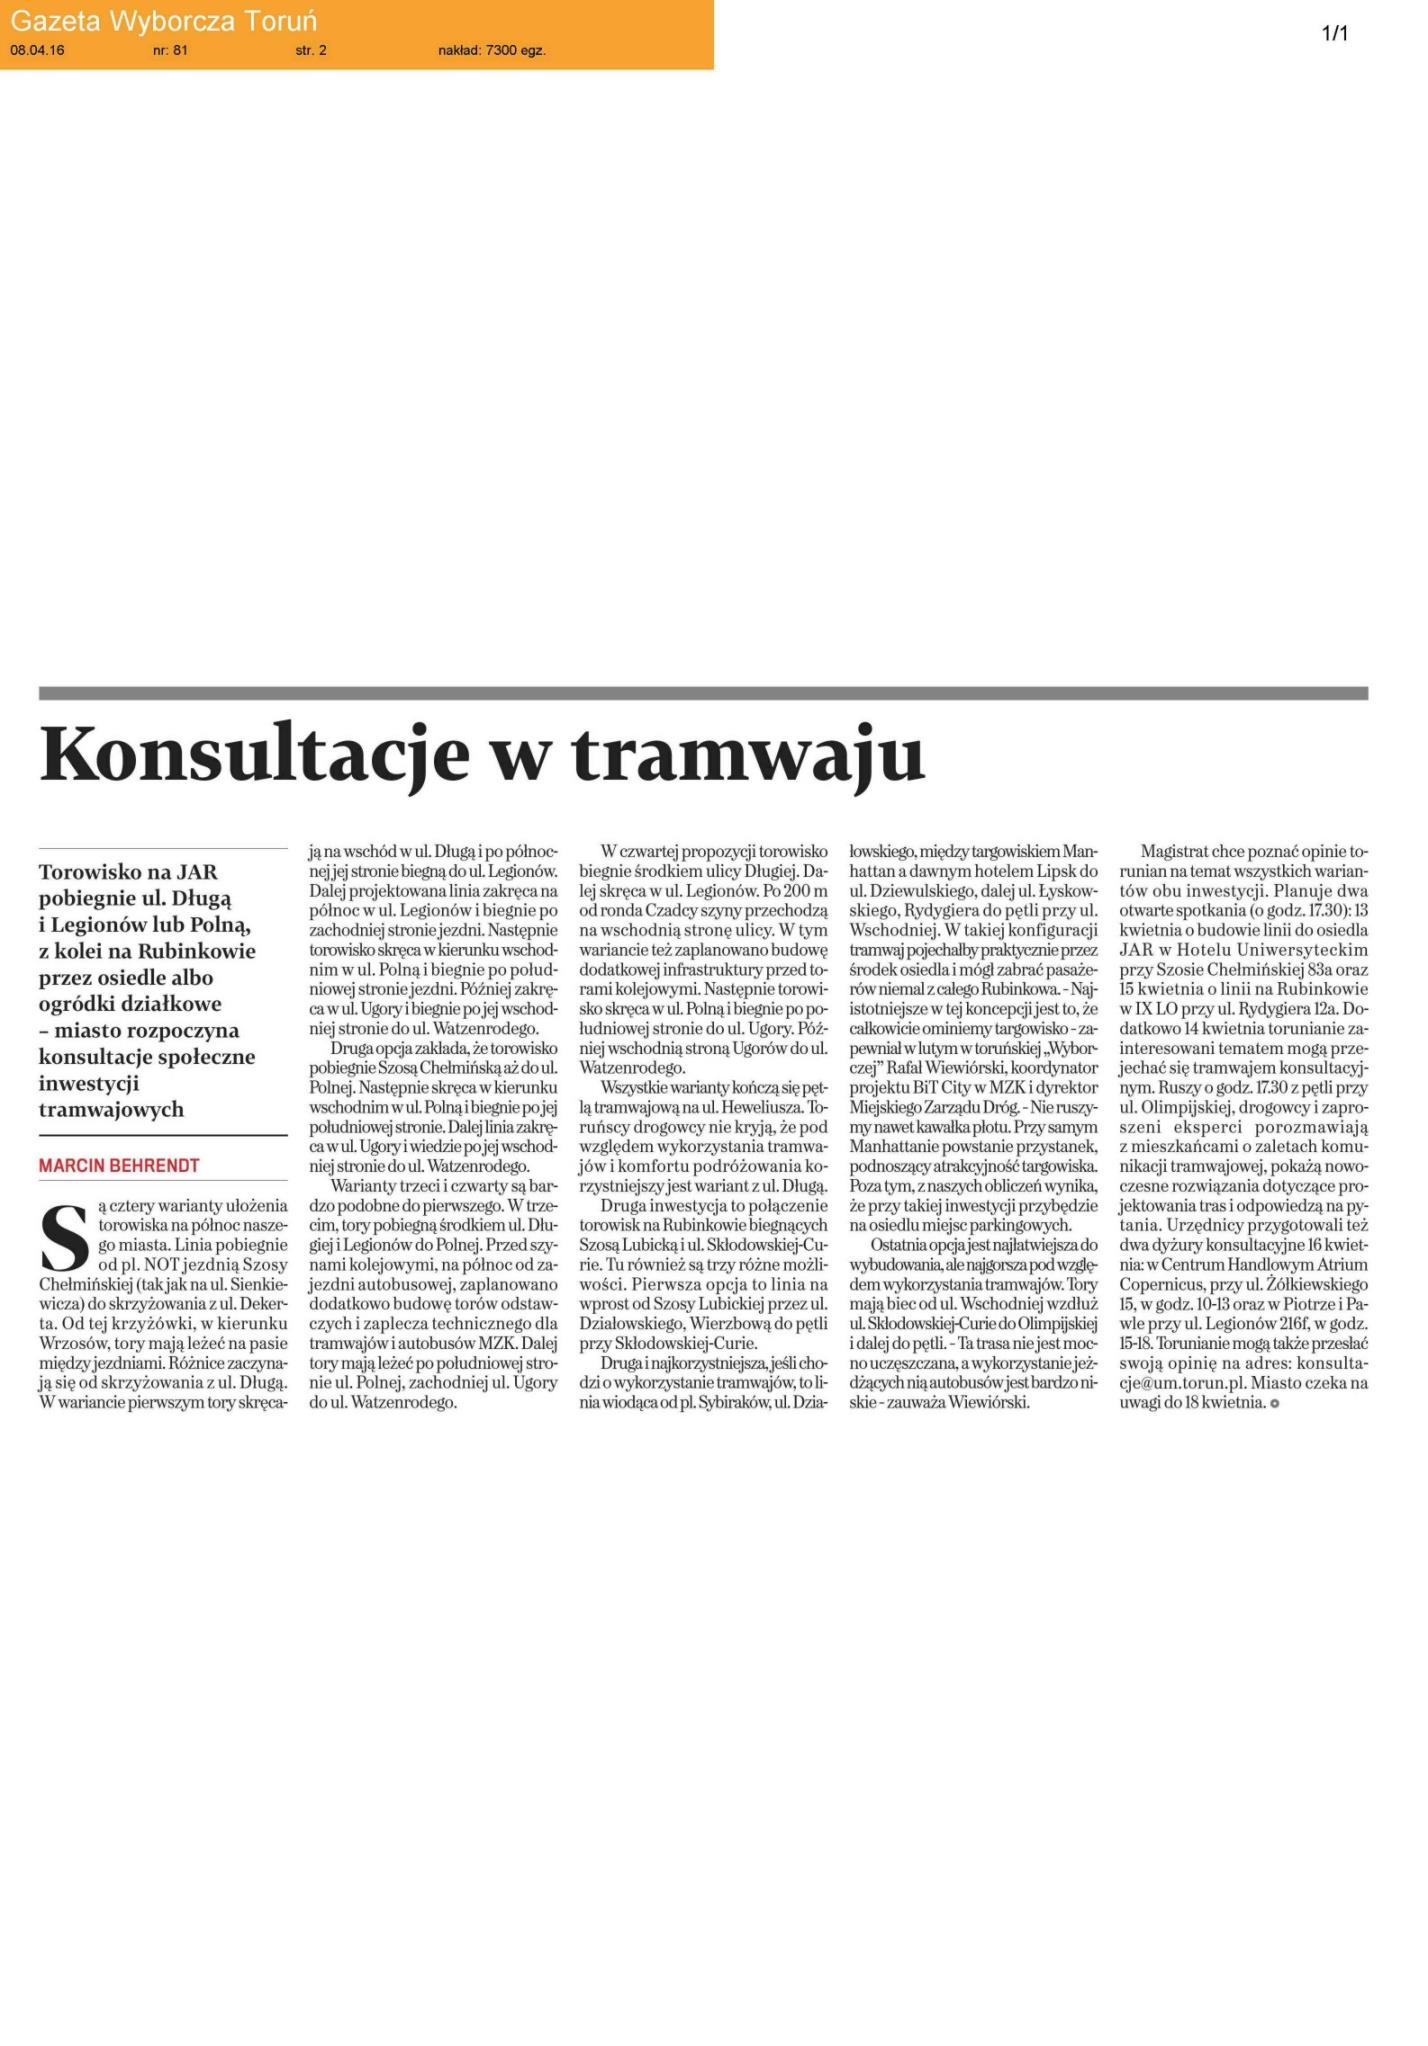 Gazeta Wyborcza, 8